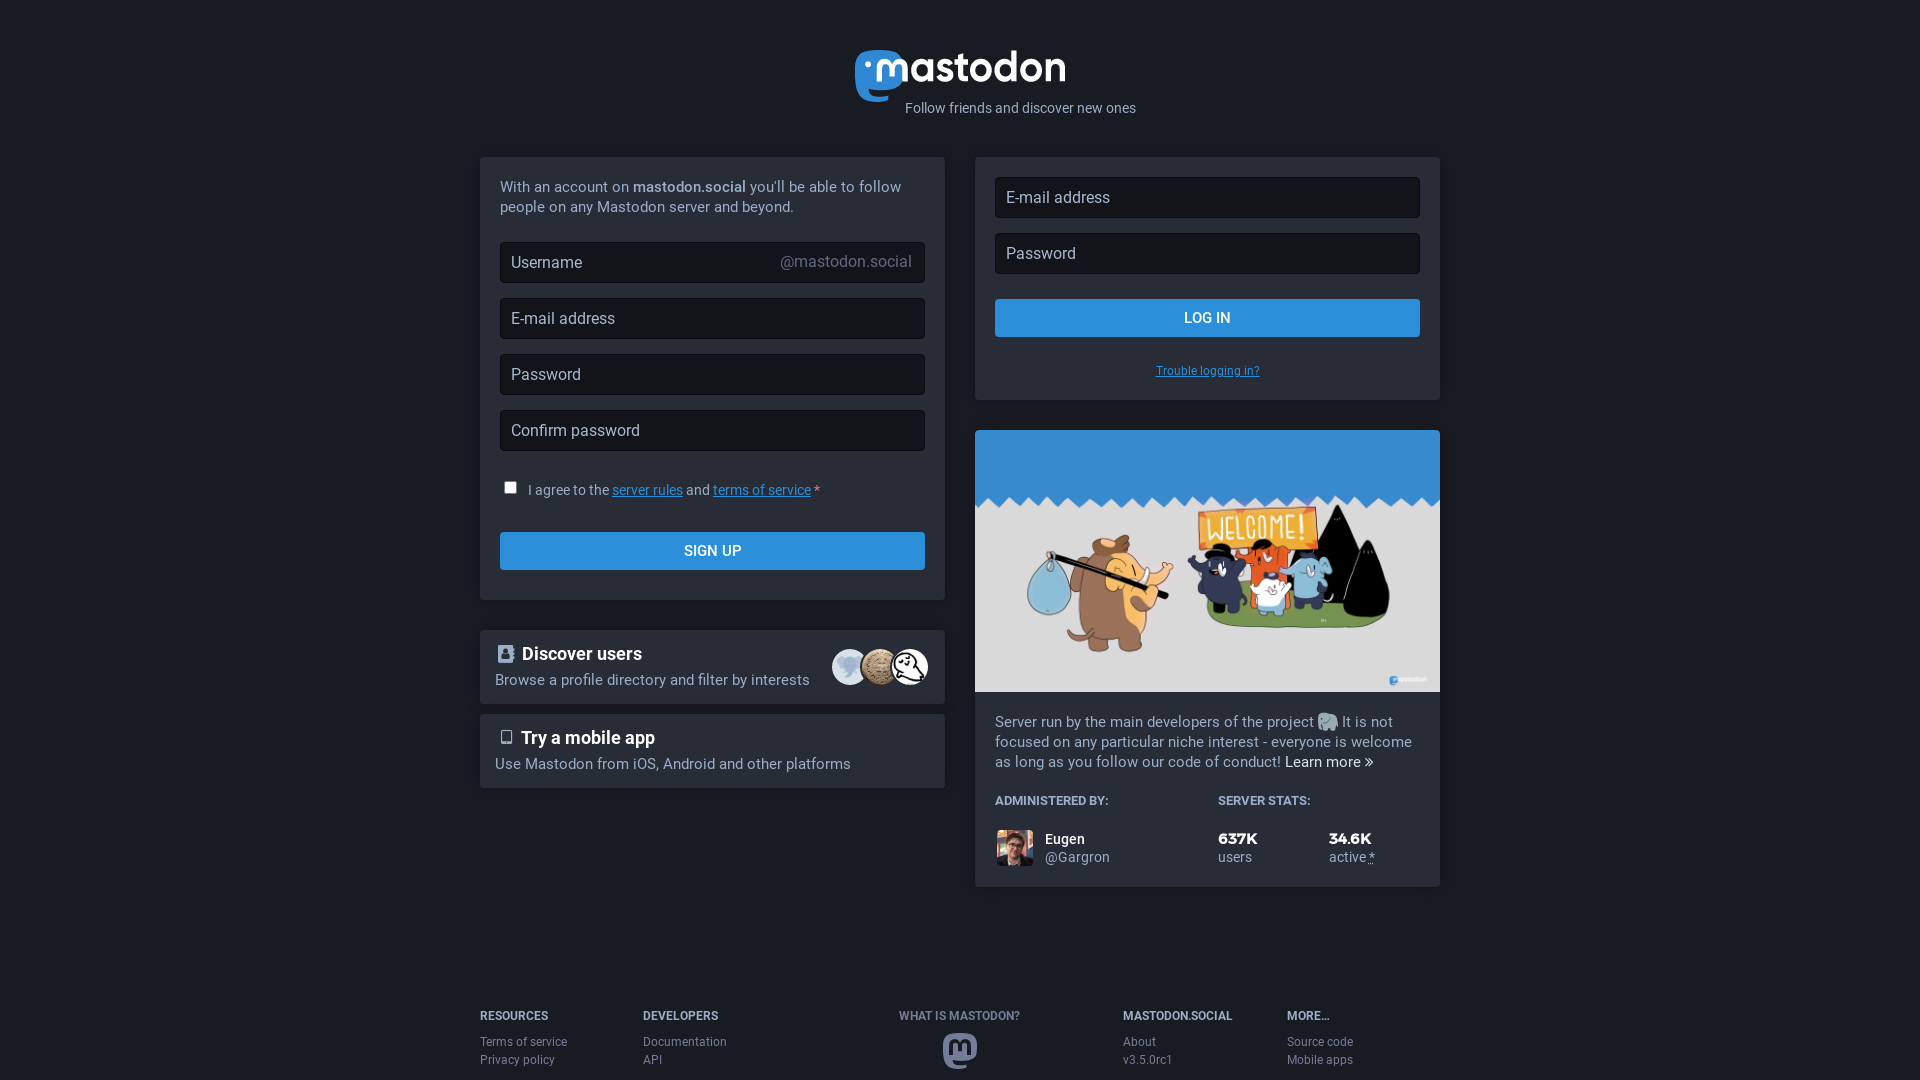 Website User Bewertung zu mastodon.social